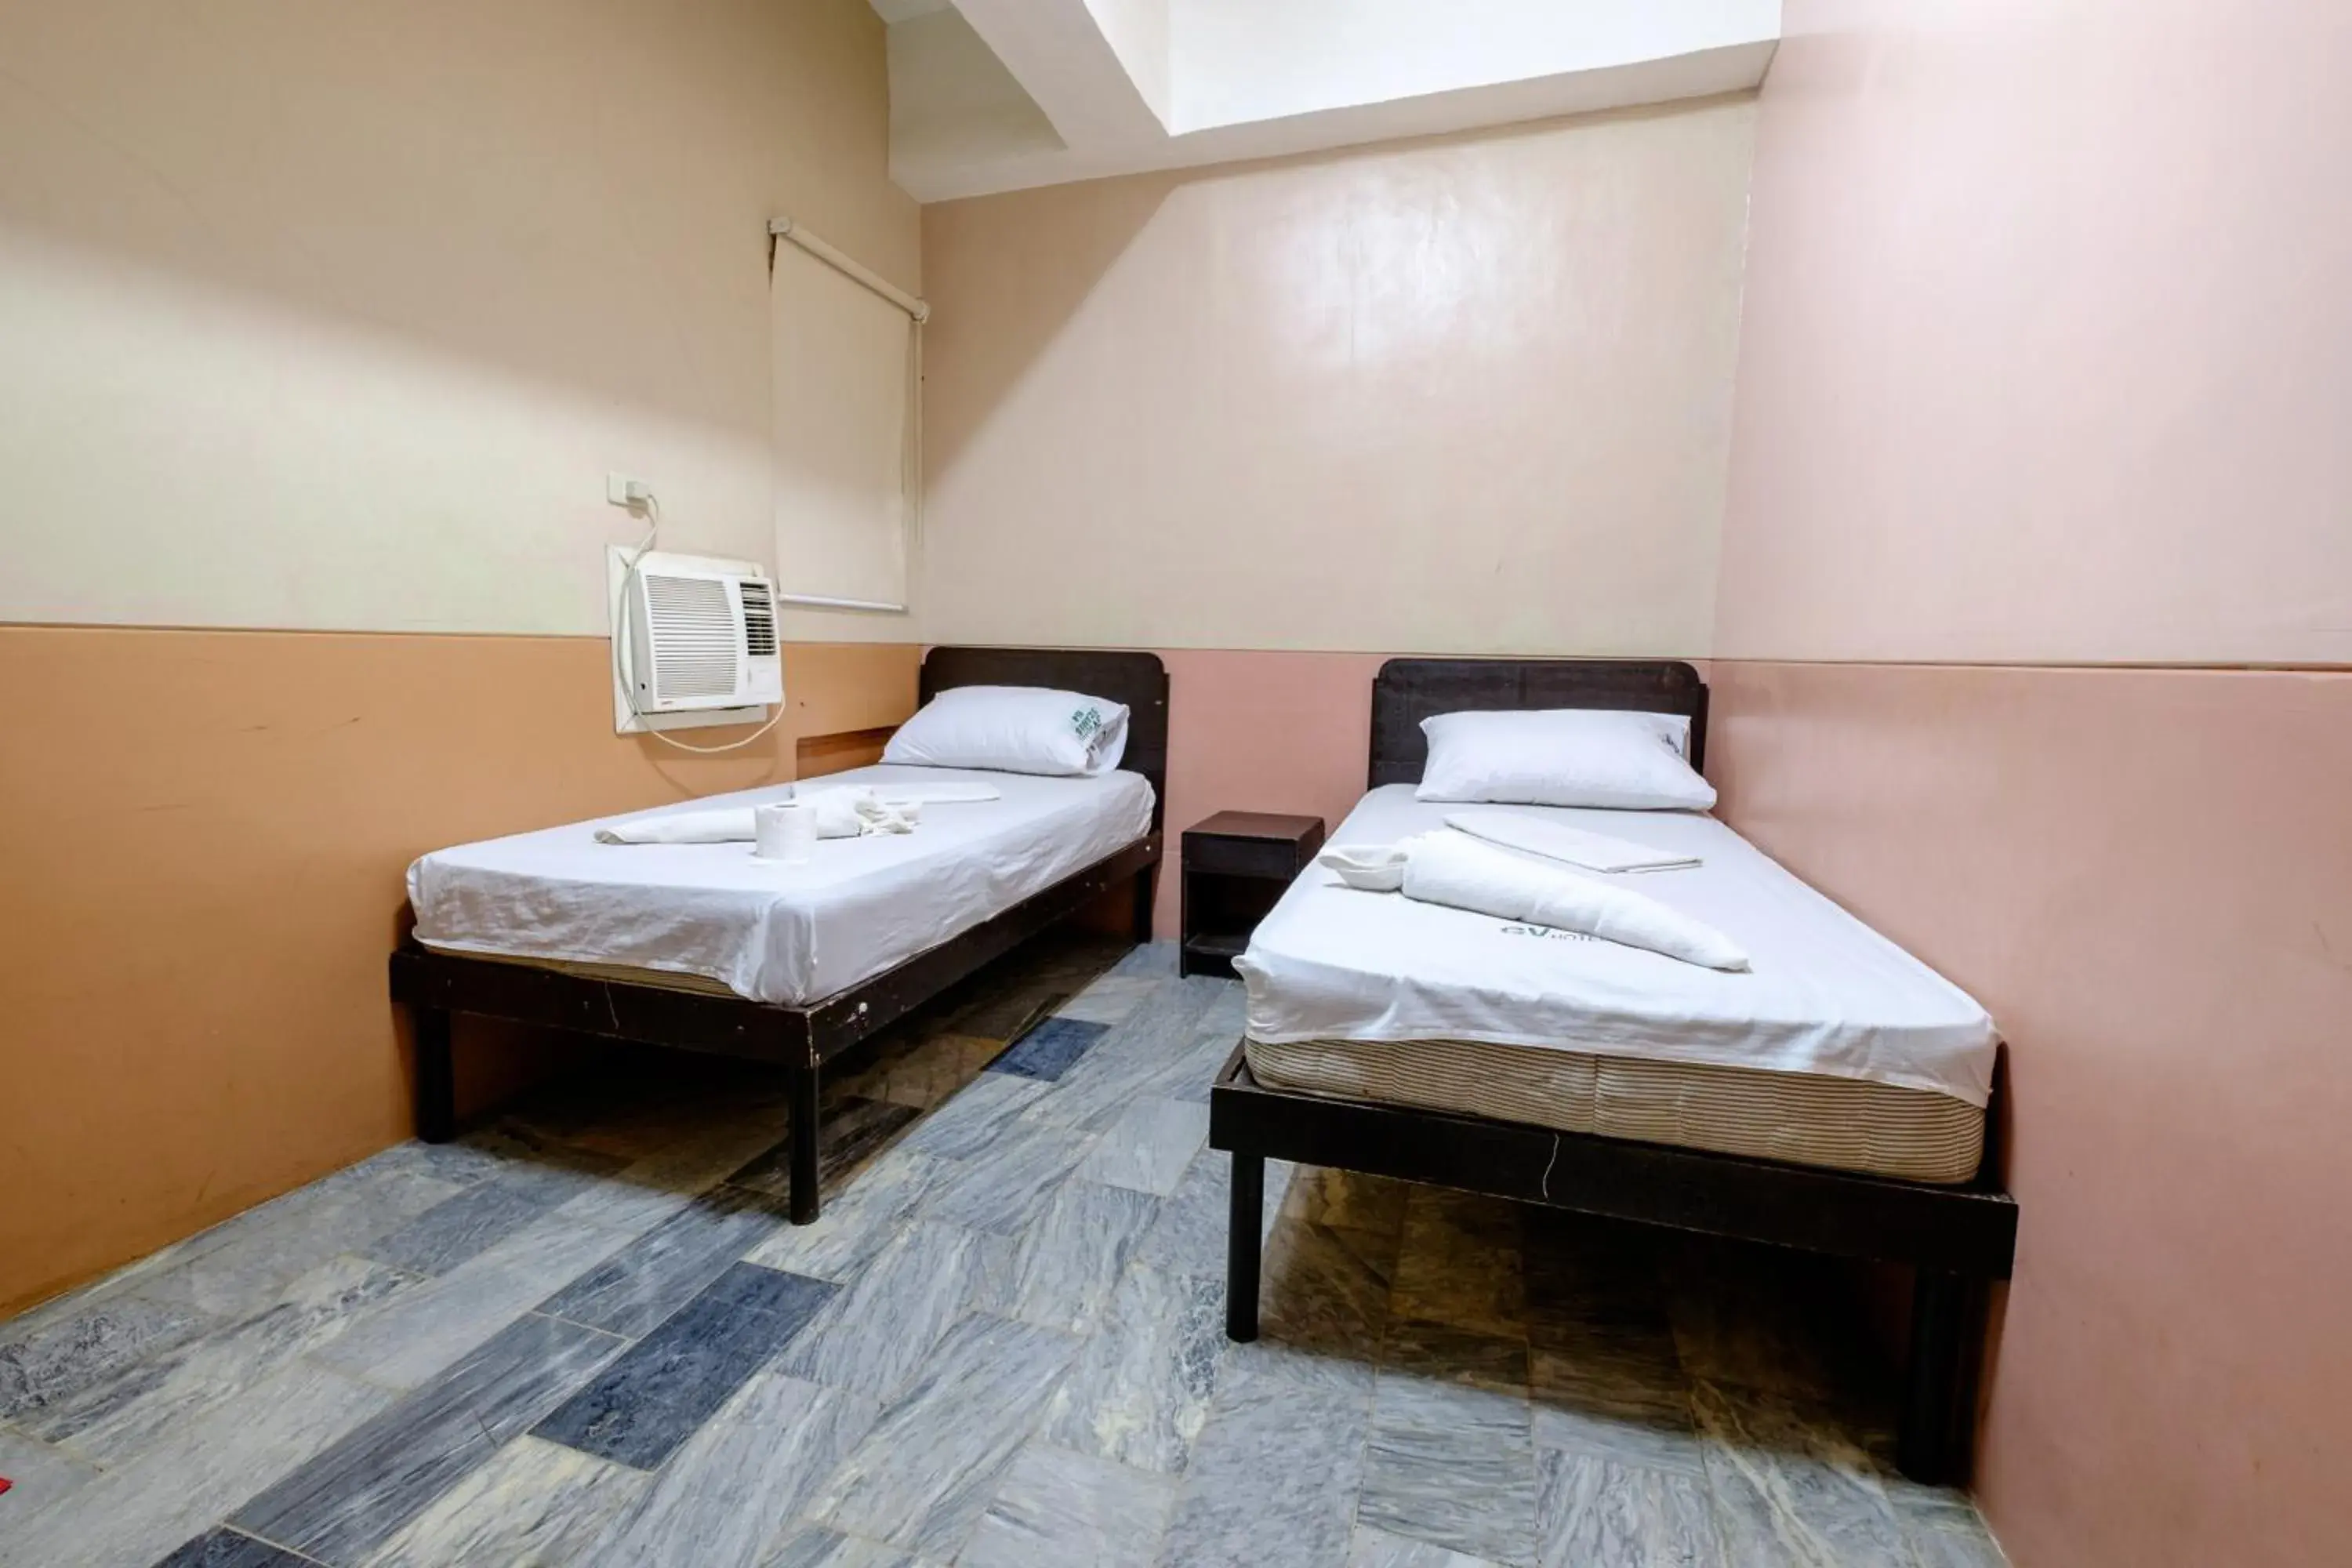 Bed, Room Photo in GV Hotel - Ozamiz